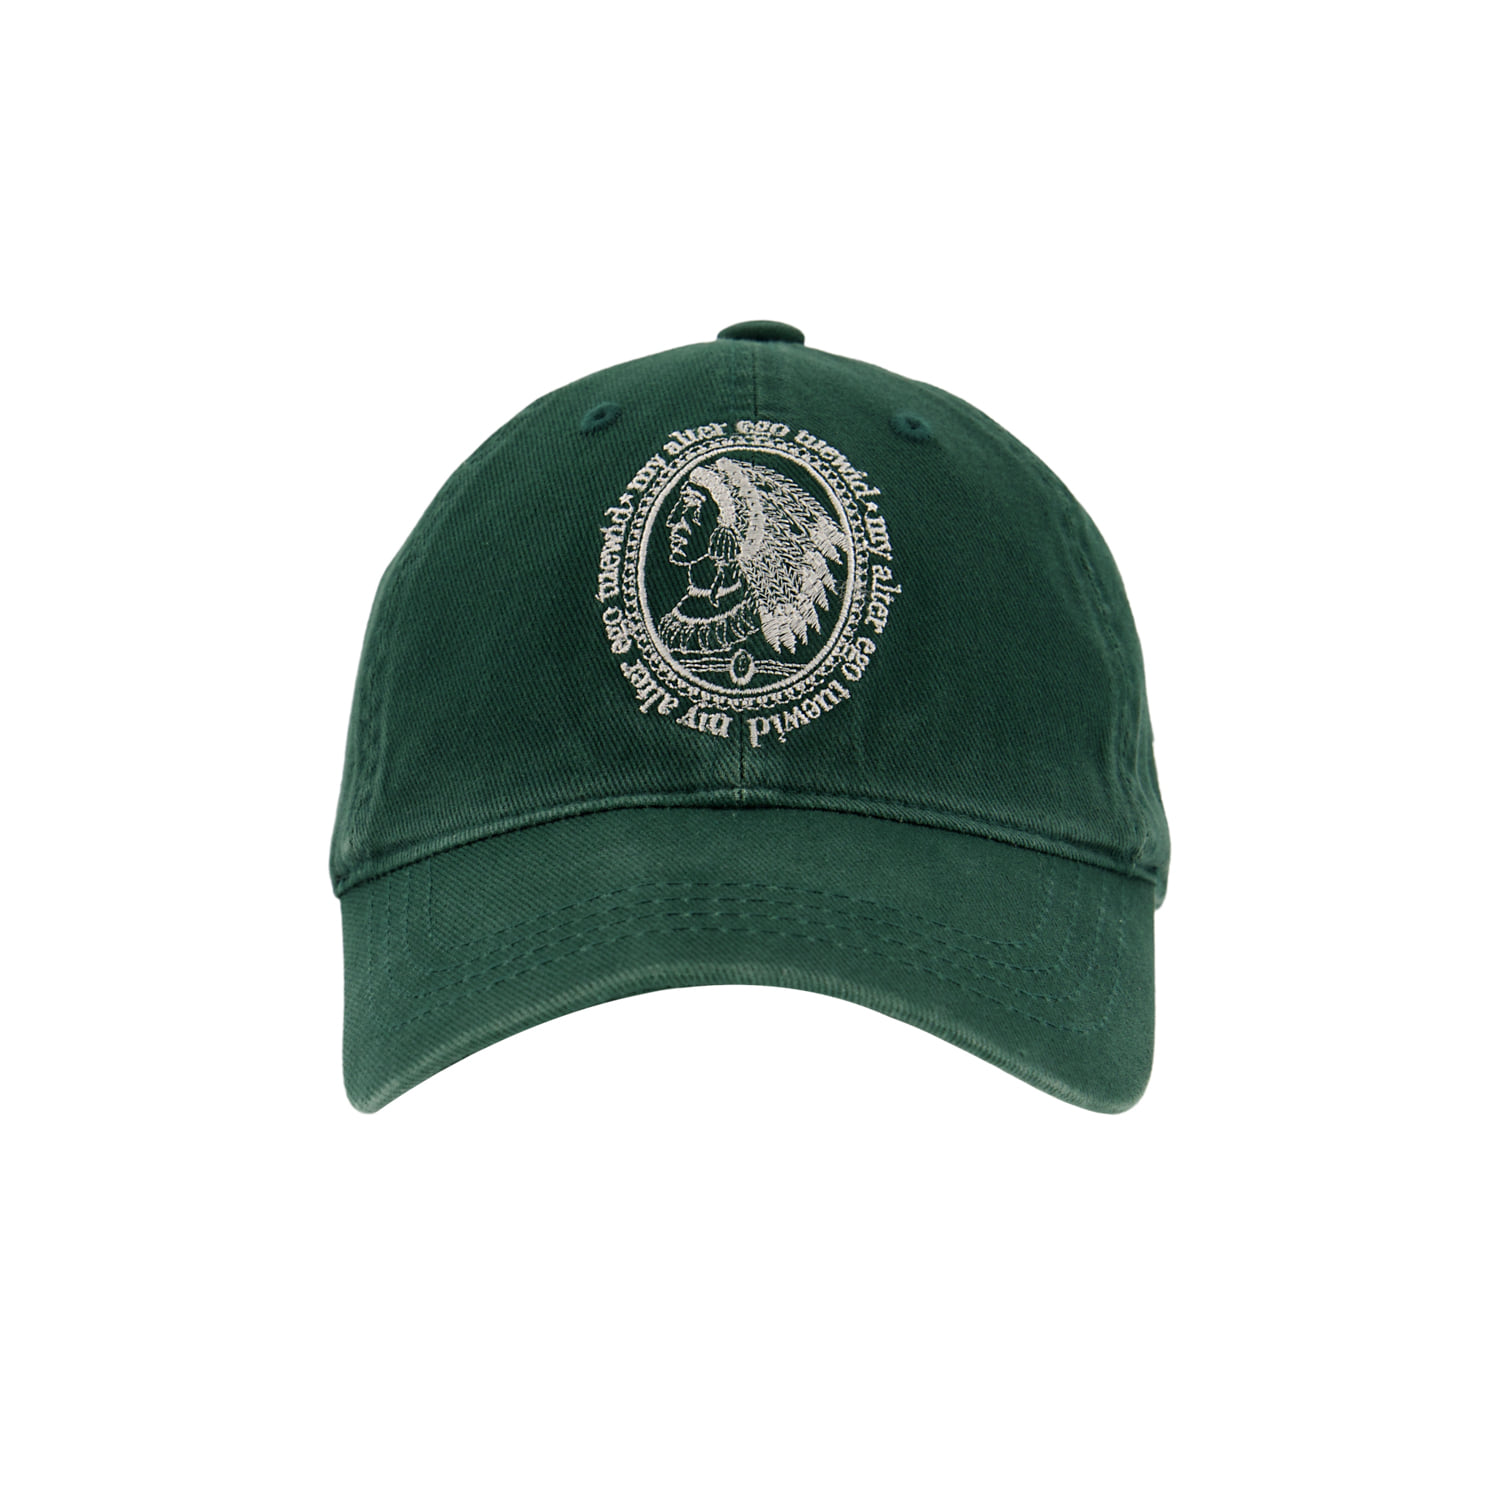 Tuewid souvenir cap ‘my alter ego’moss green/ivory